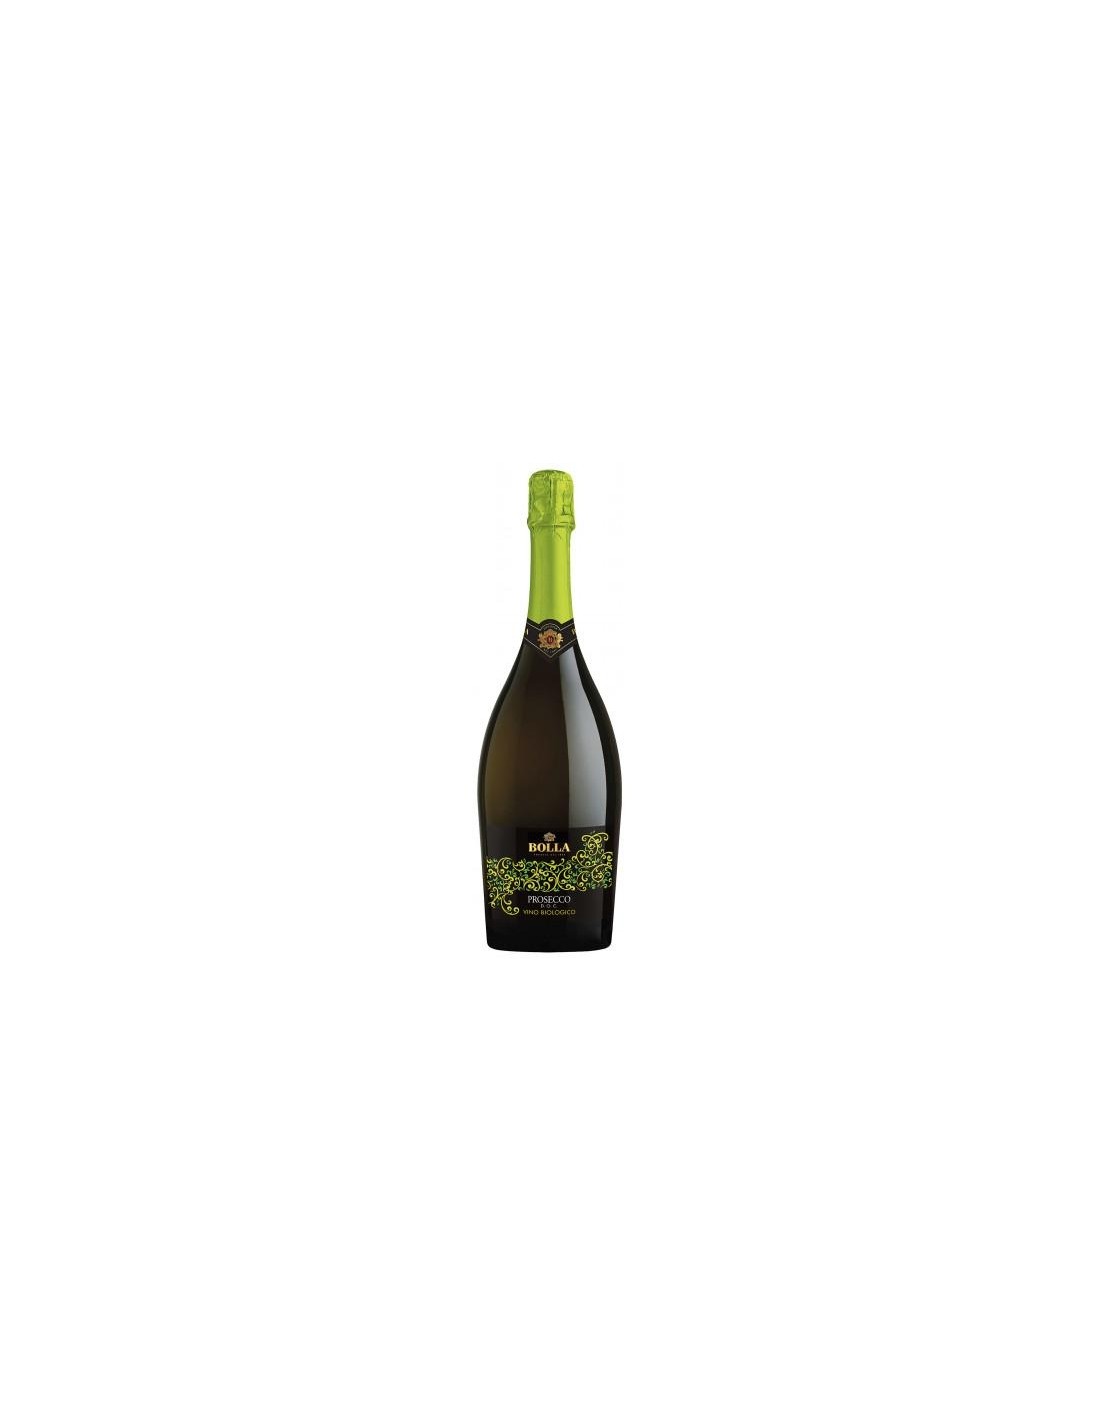 Vin prosecco Bolla Biologico Veneto, 0.75L, 11% alc., Italia alcooldiscount.ro